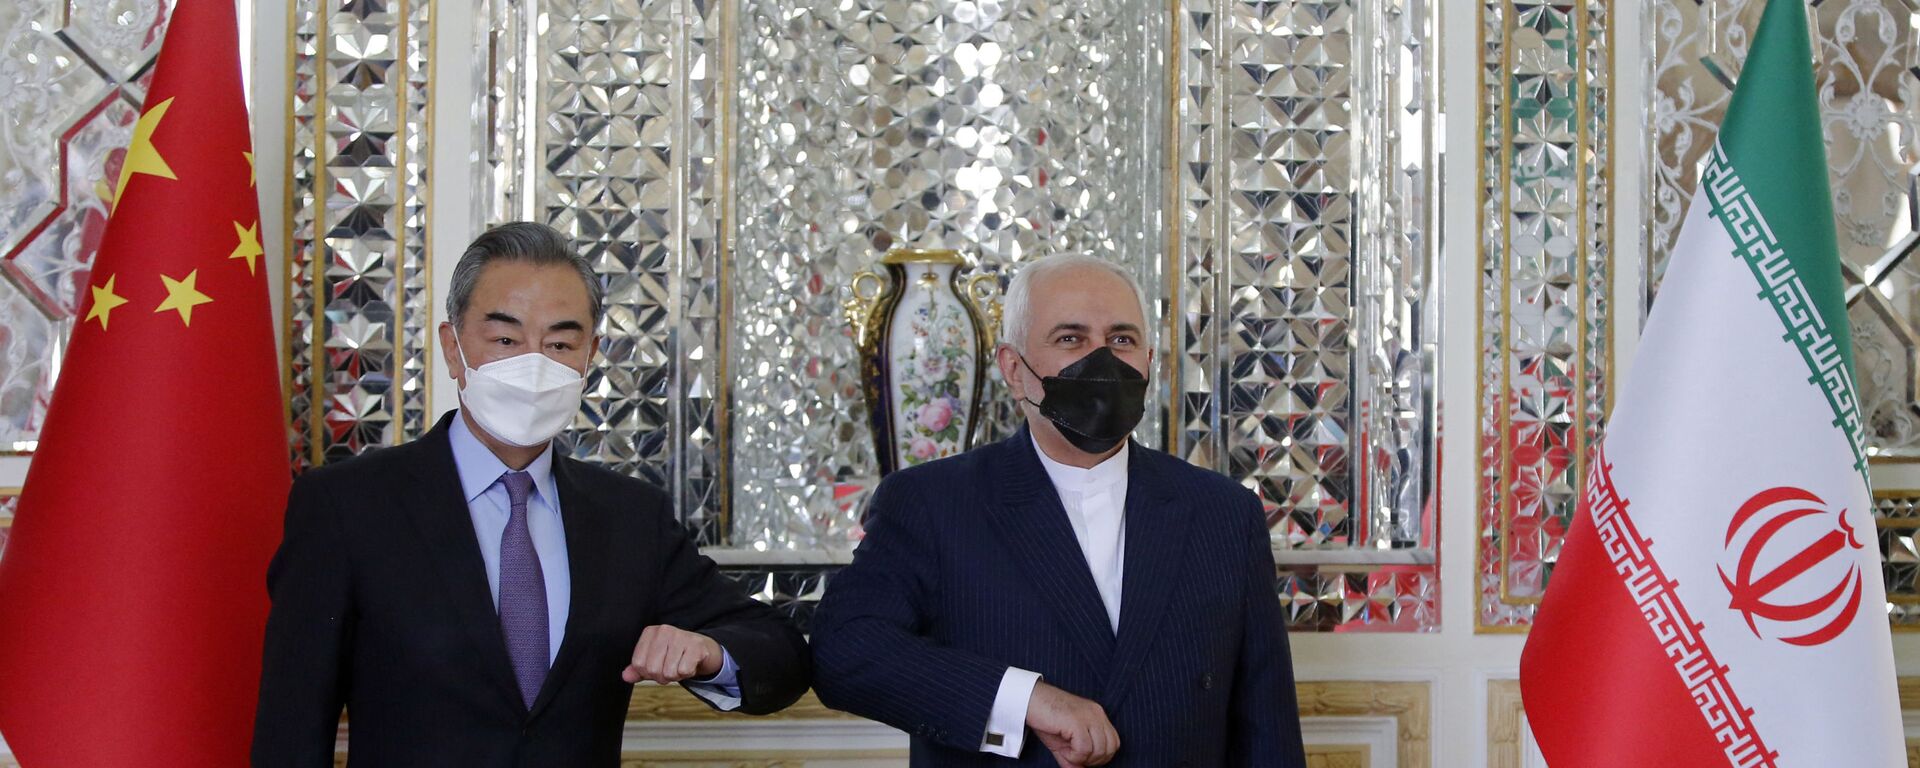  Bộ trưởng Ngoại giao Iran Mohammad Javad Zarif chào mừng người đồng cấp Trung Quốc Vương Nghị đến thăm Tehran, thủ đô Iran. - Sputnik Việt Nam, 1920, 27.03.2021